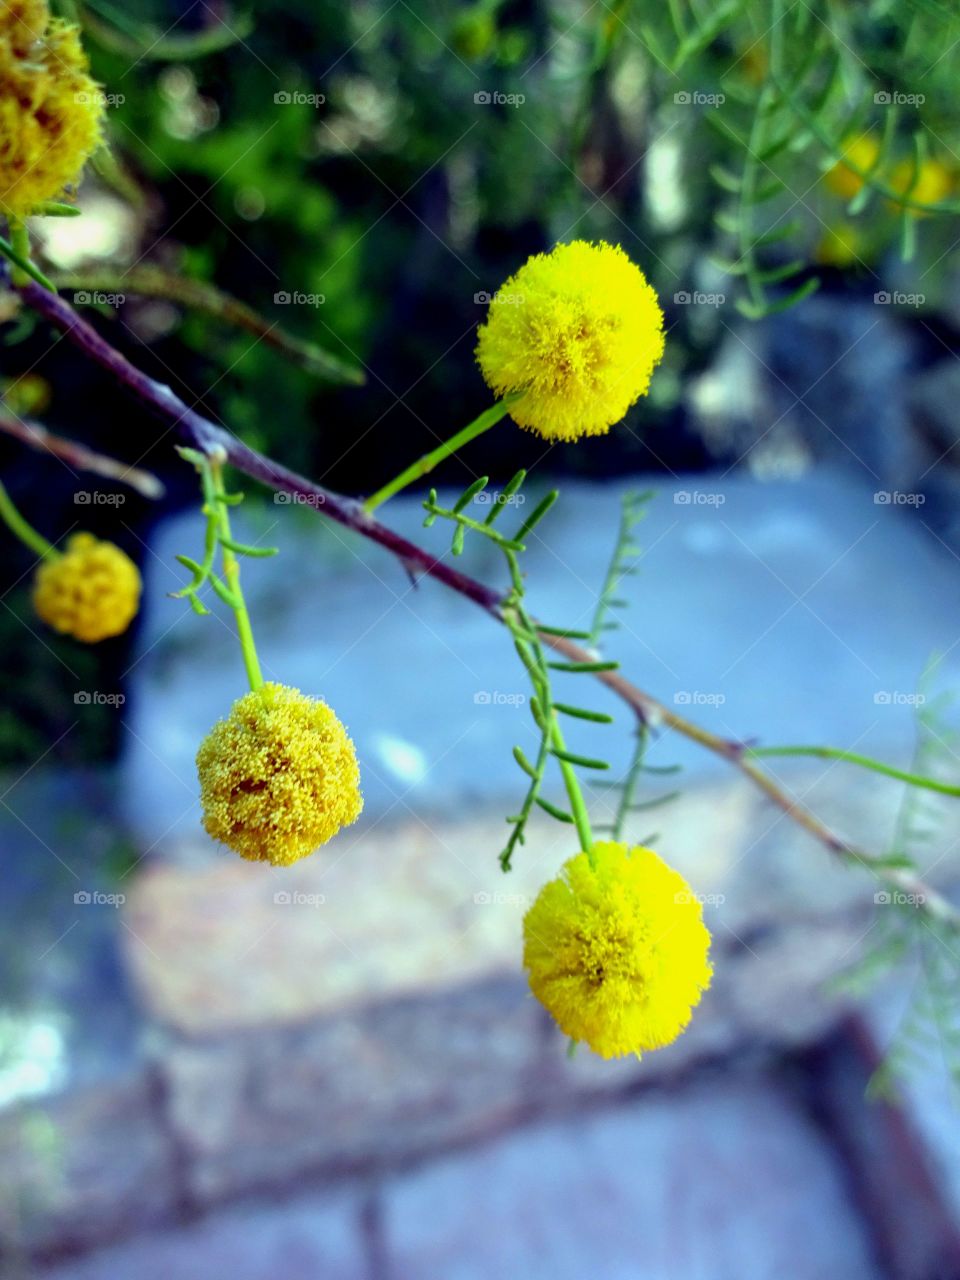 Beautiful yellow balls